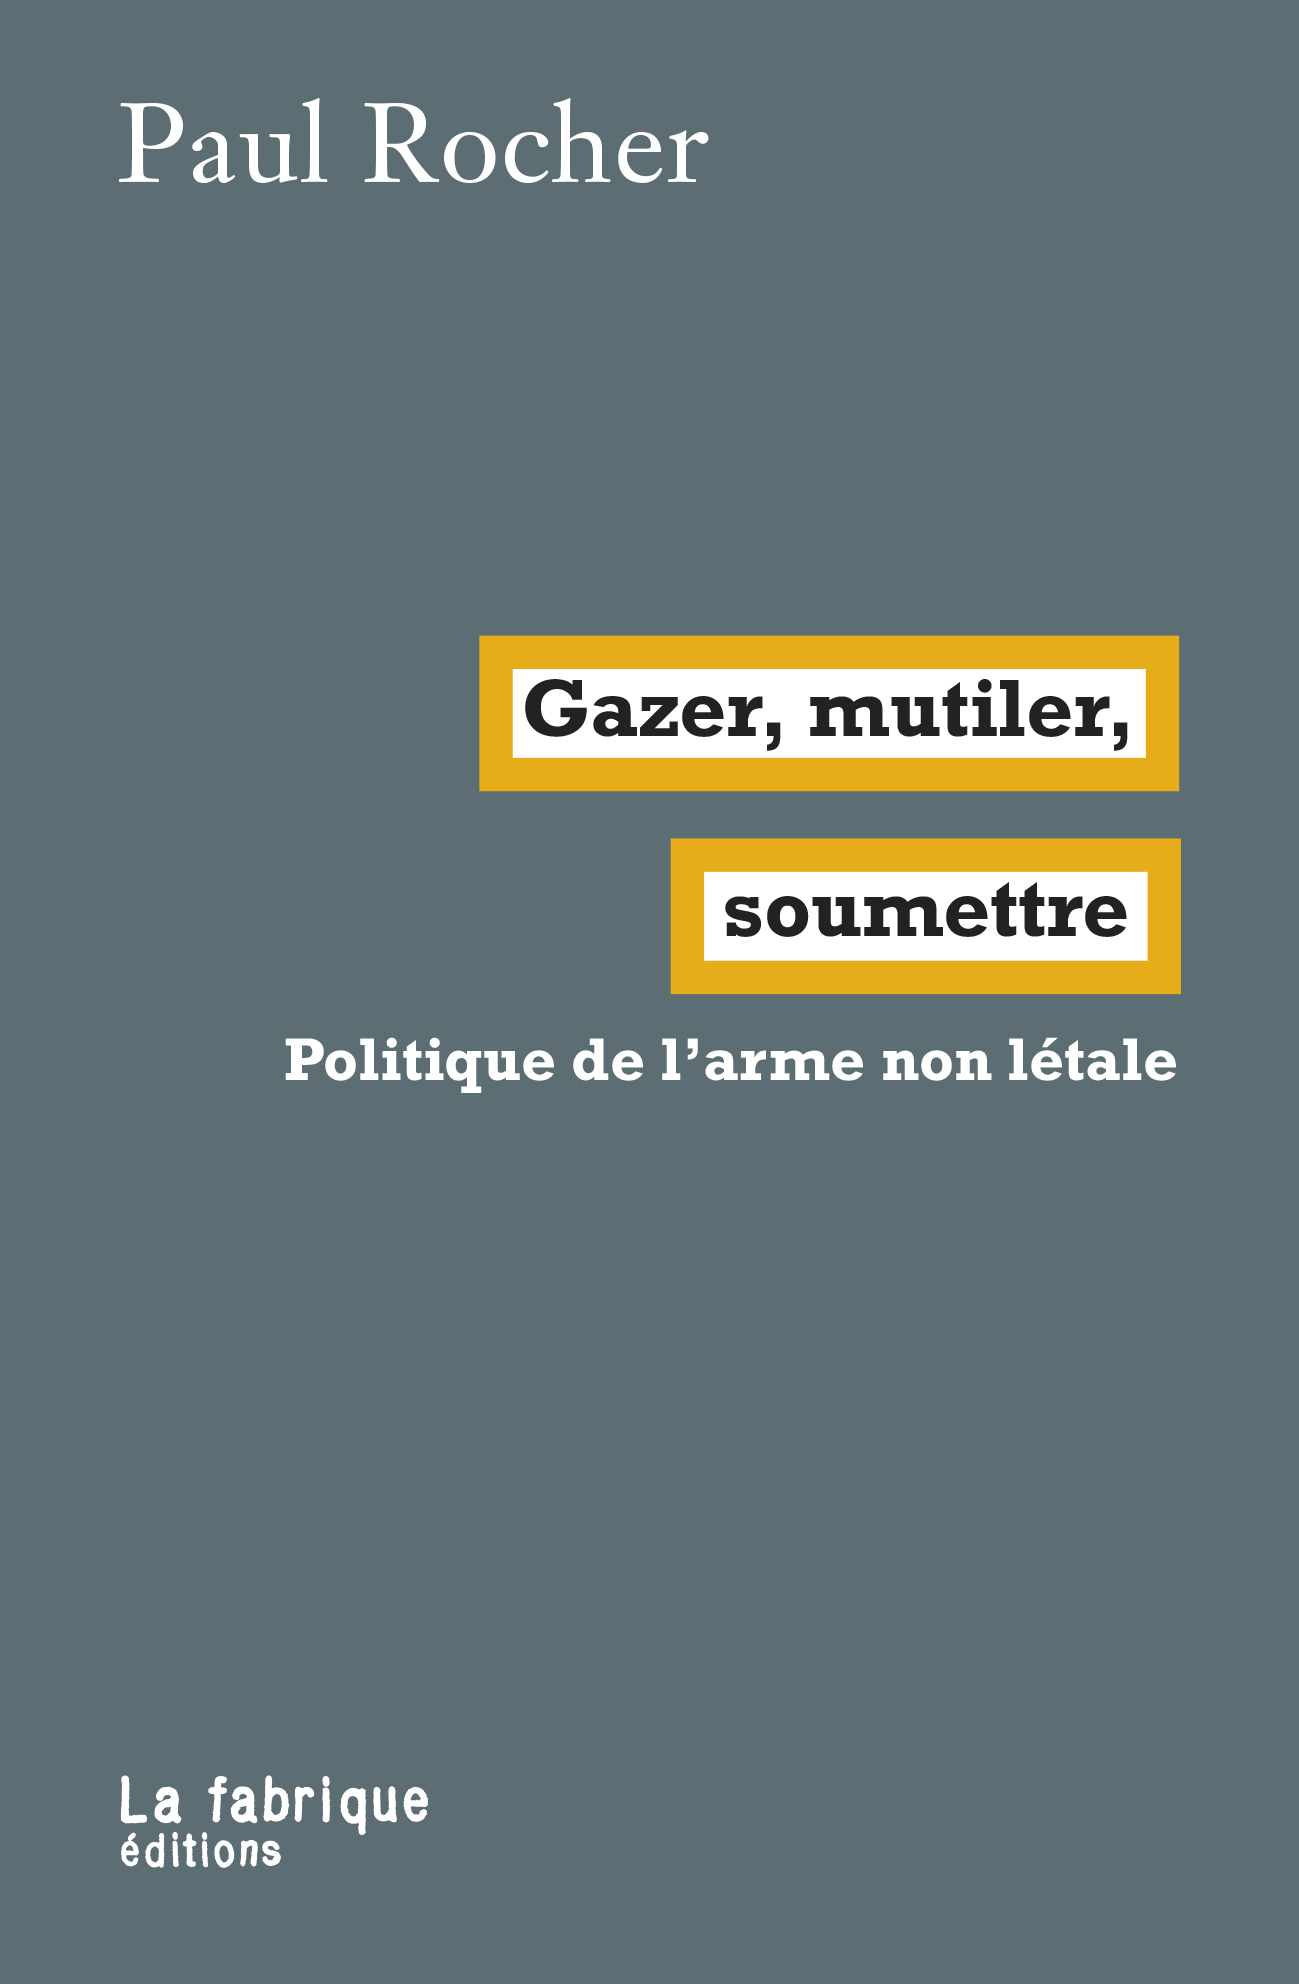 Paul Rocher: Gazer, mutiler, soumettre